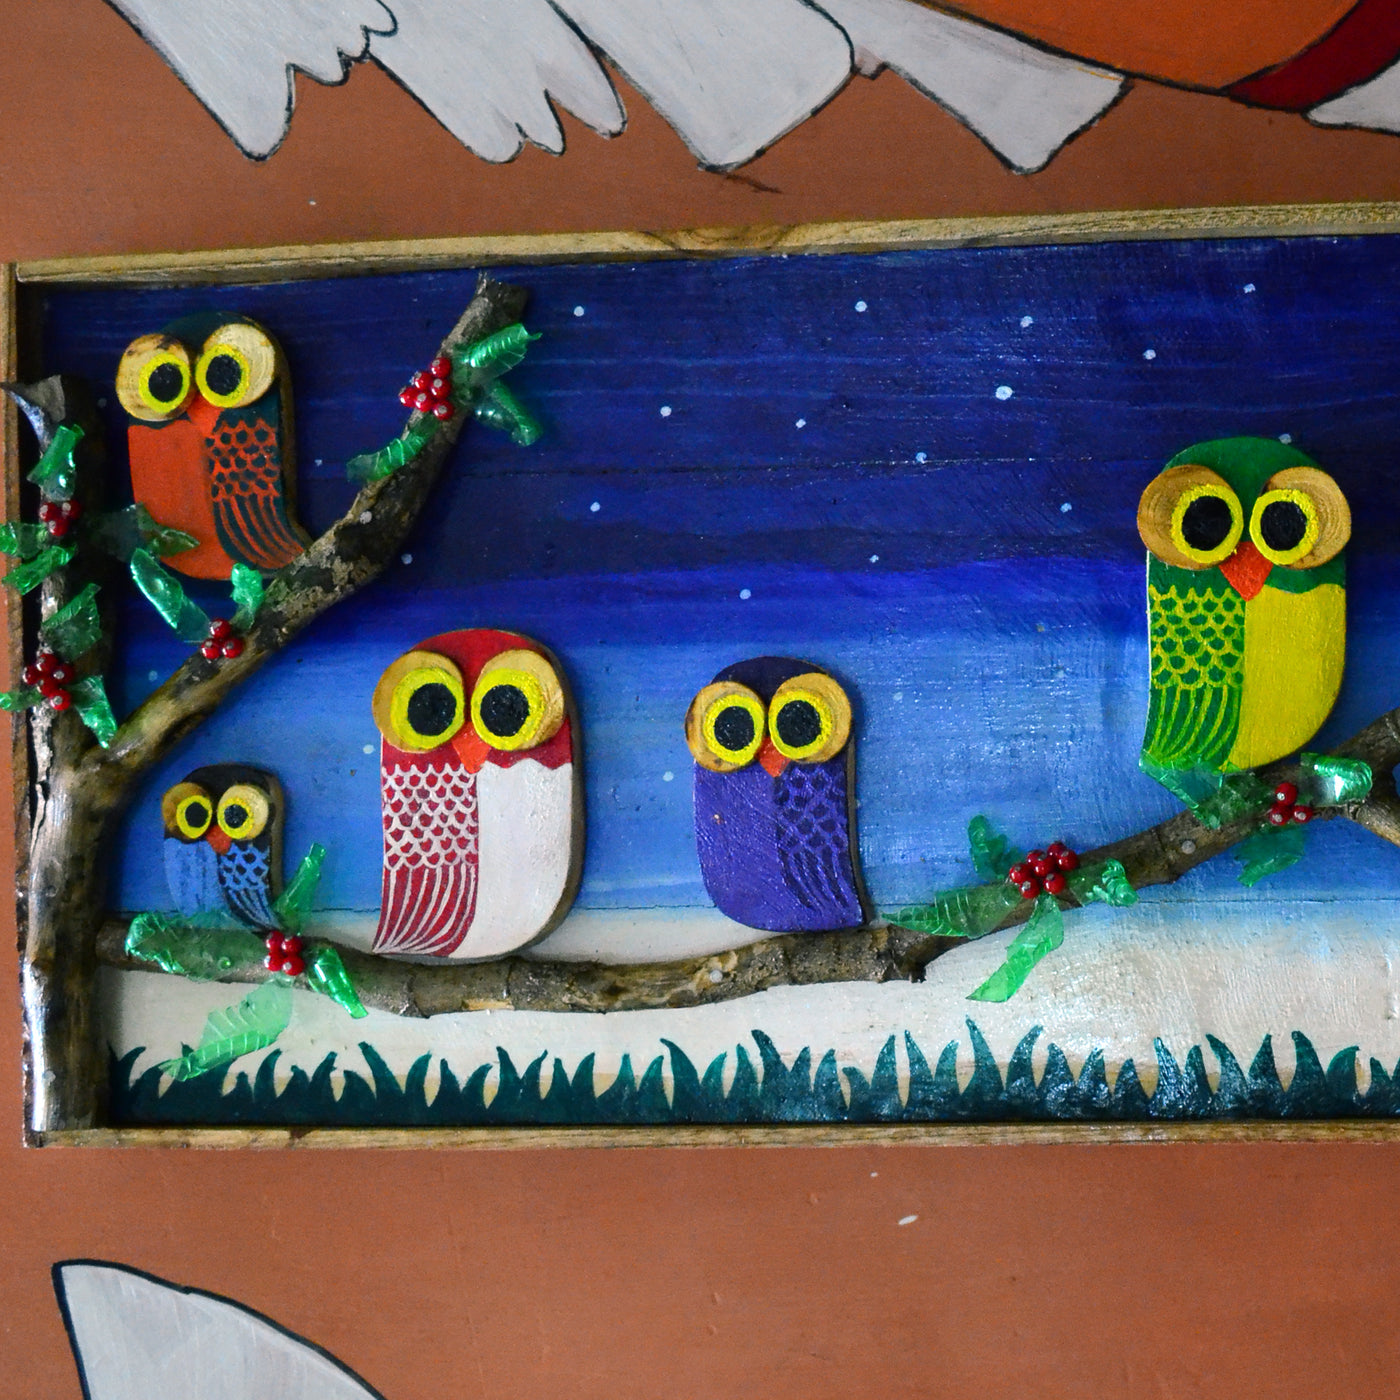 Chinhhari arts wooden hand painted owl wall decor - WWD015 - Chinhhari Arts store